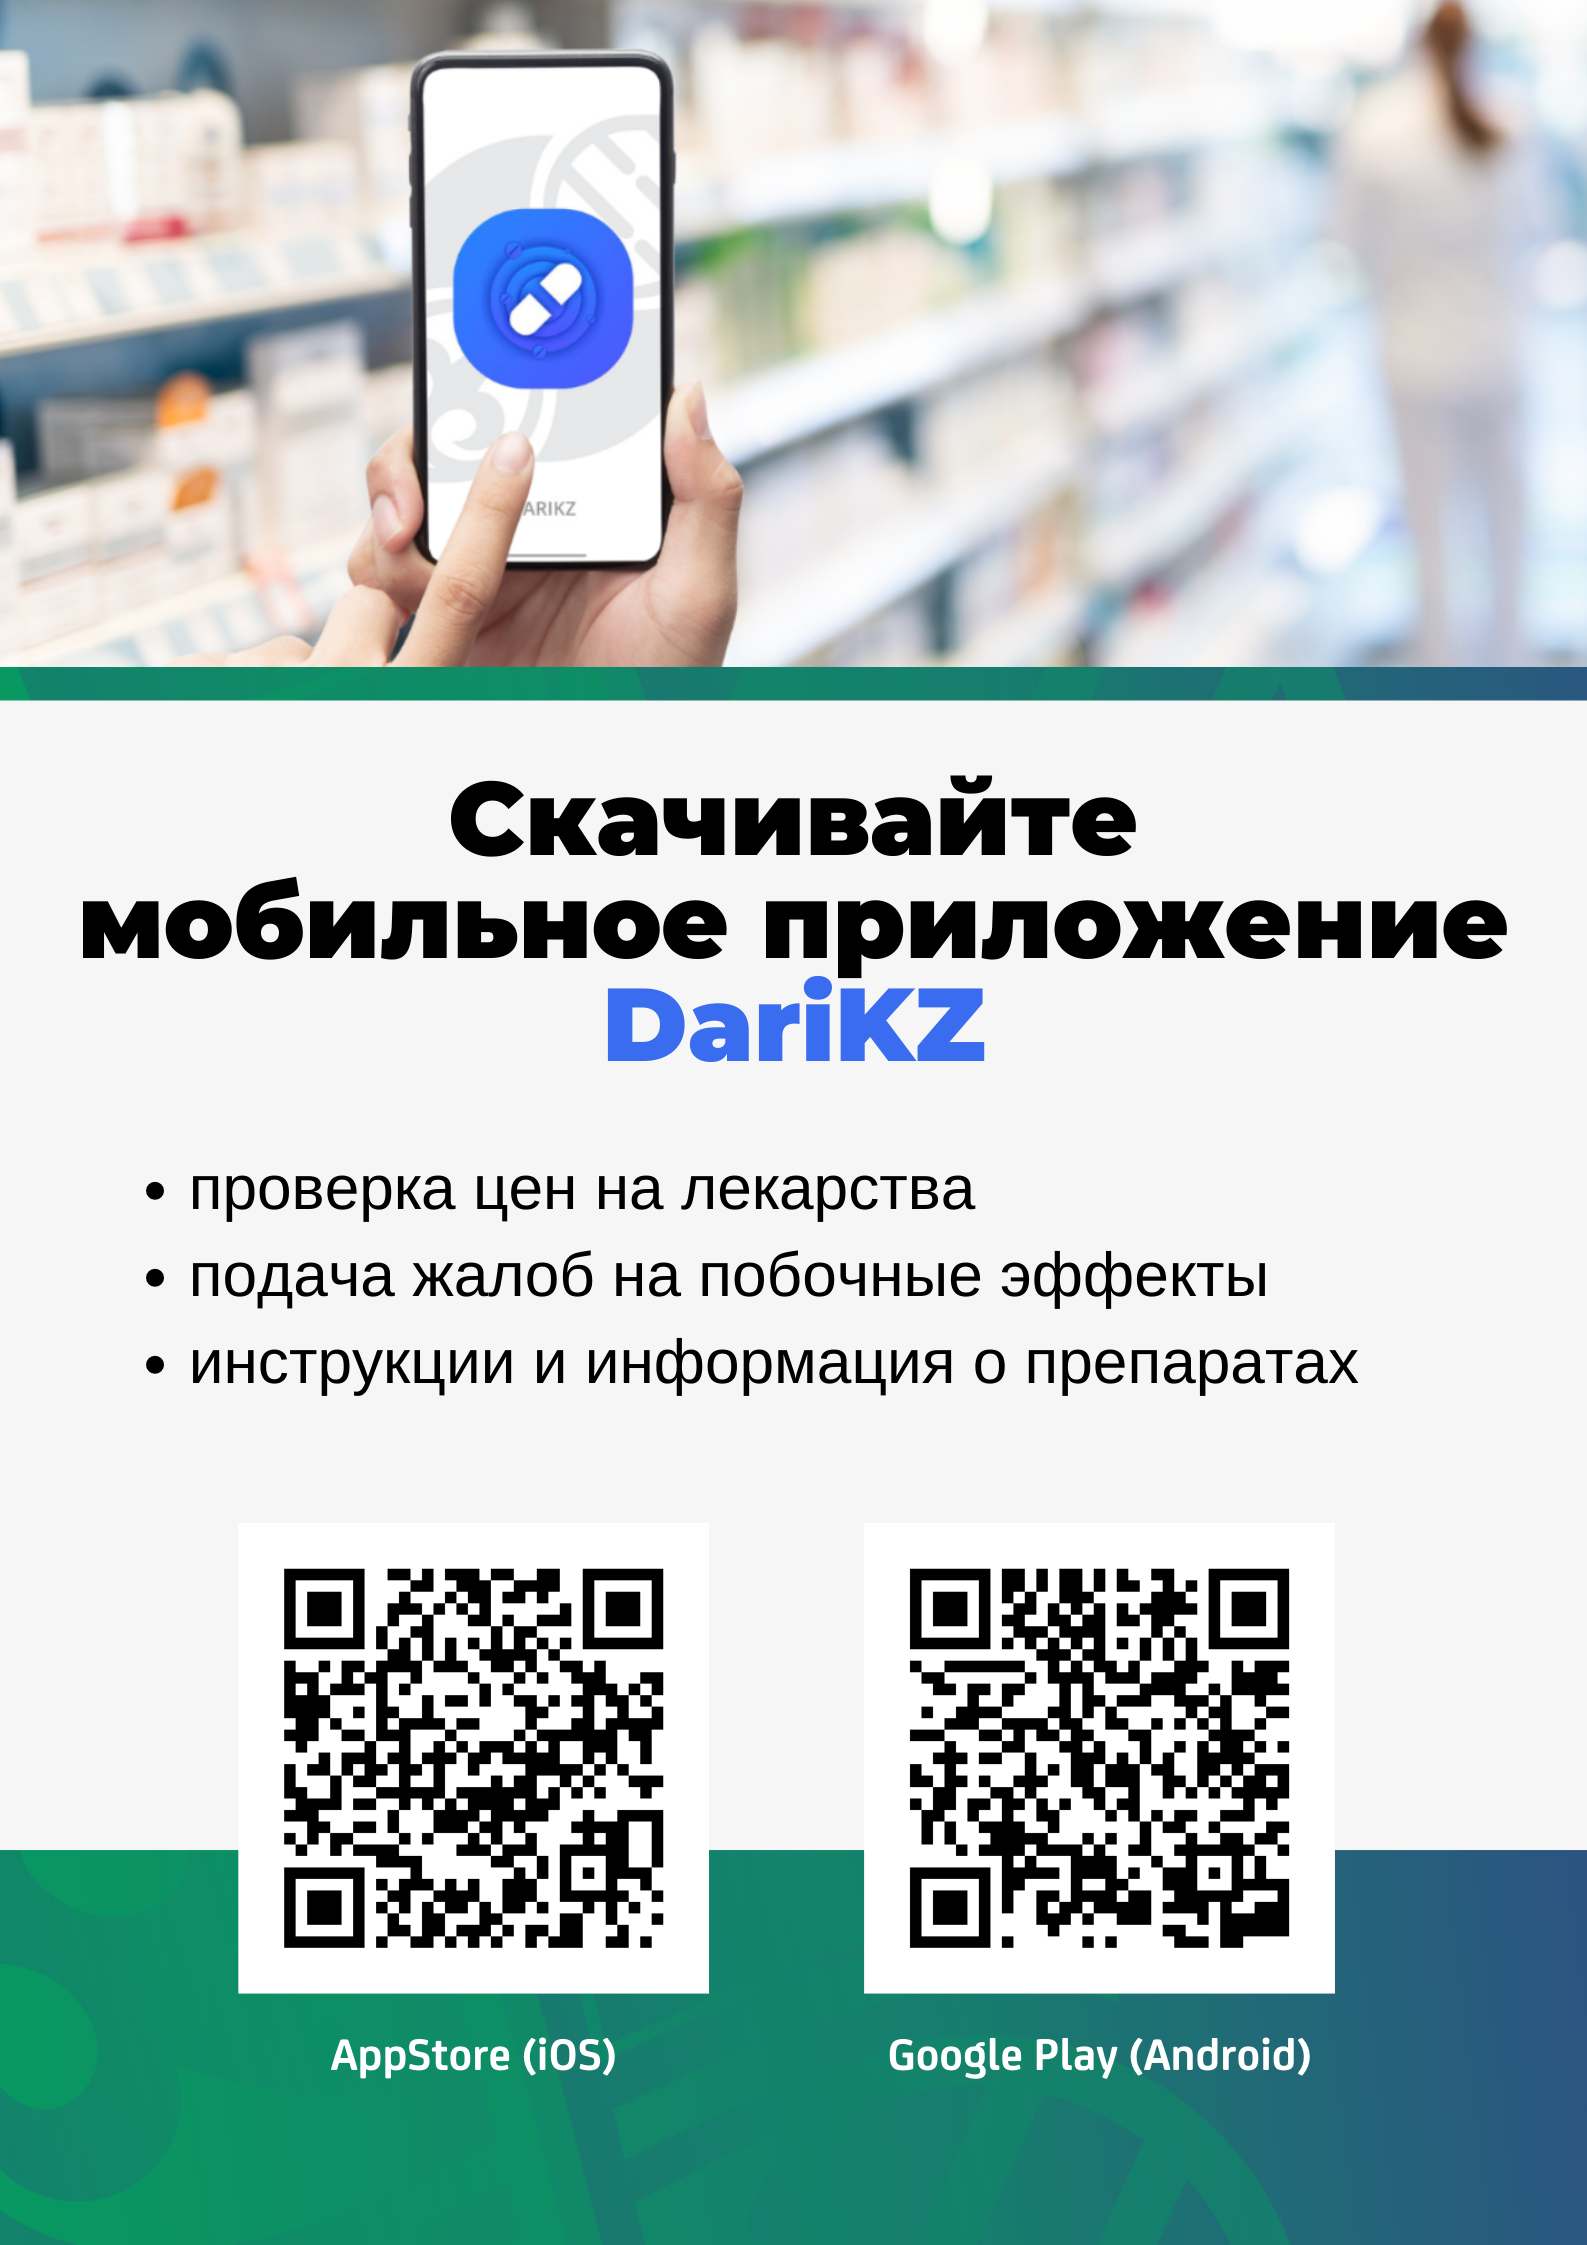 Отправить информацию о побочном действии лекарственного препарата теперь можно через приложение DariKZ